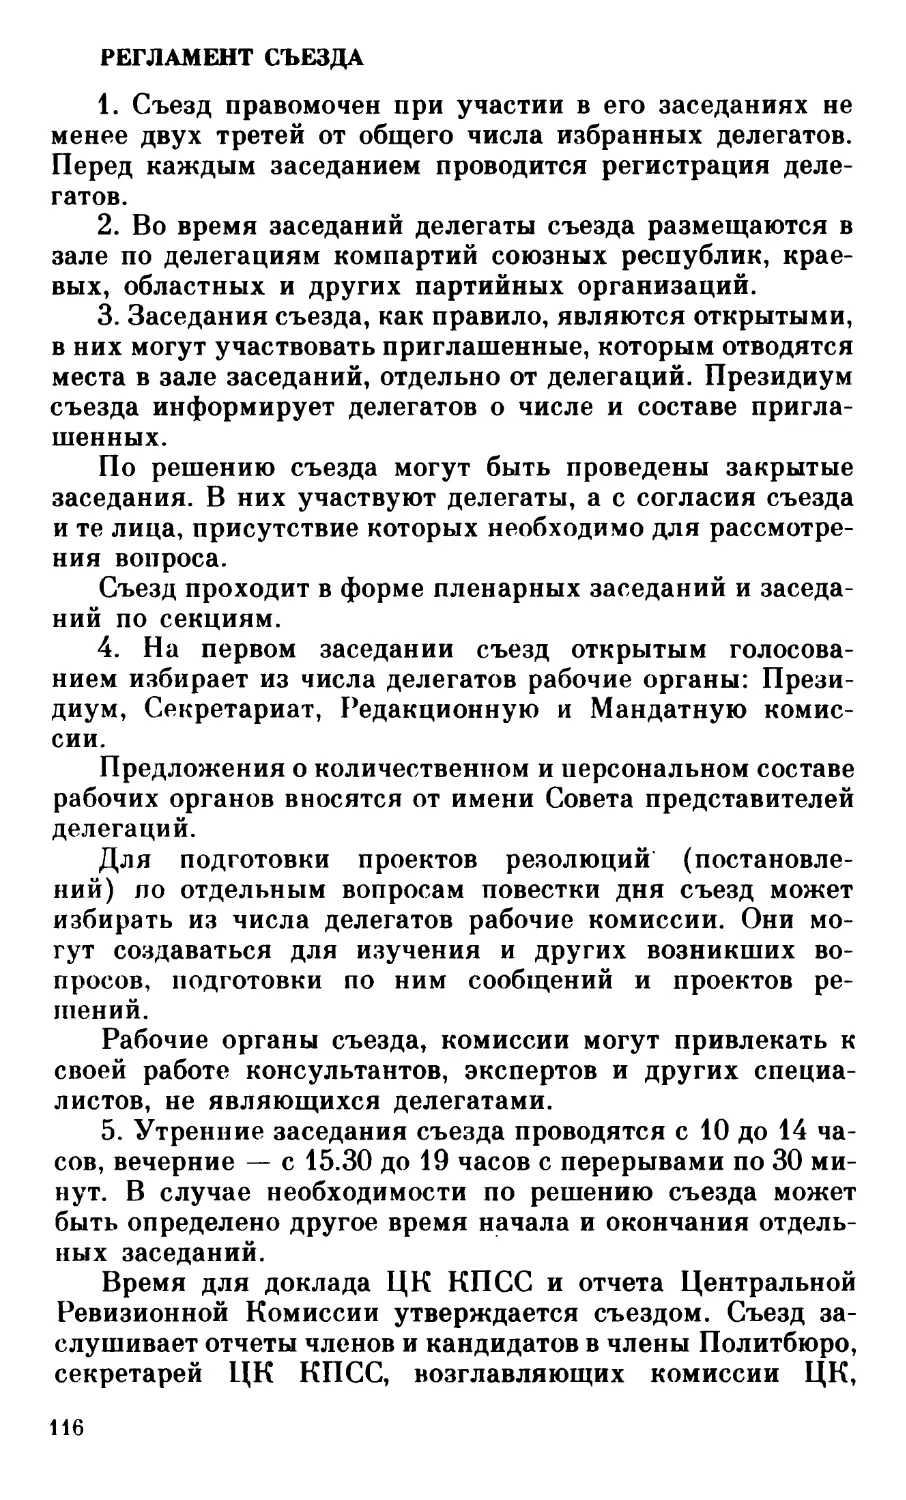 Регламент XXVIII съезда КПСС